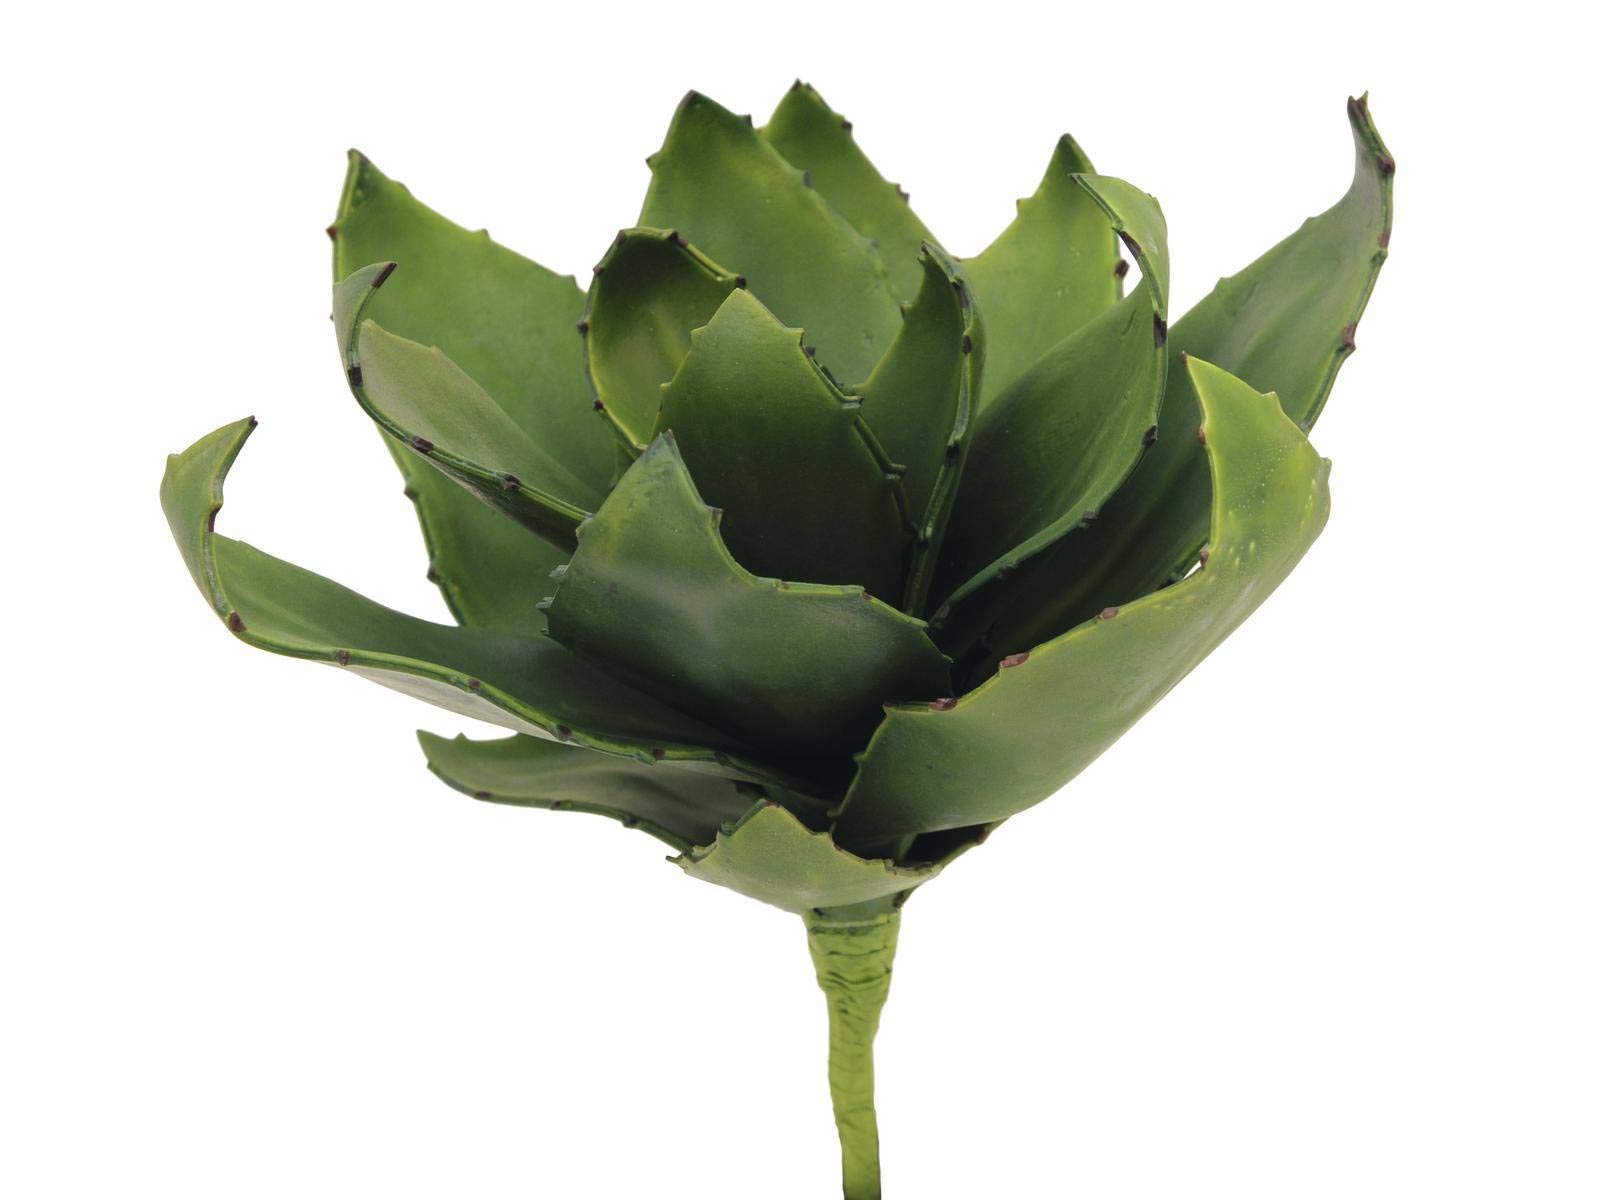 artplants.de Künstliche Agave, real Touch, Ø 40cm, wetterfest - Künstliche Sukkulente - Kunstpflanze Kaktus